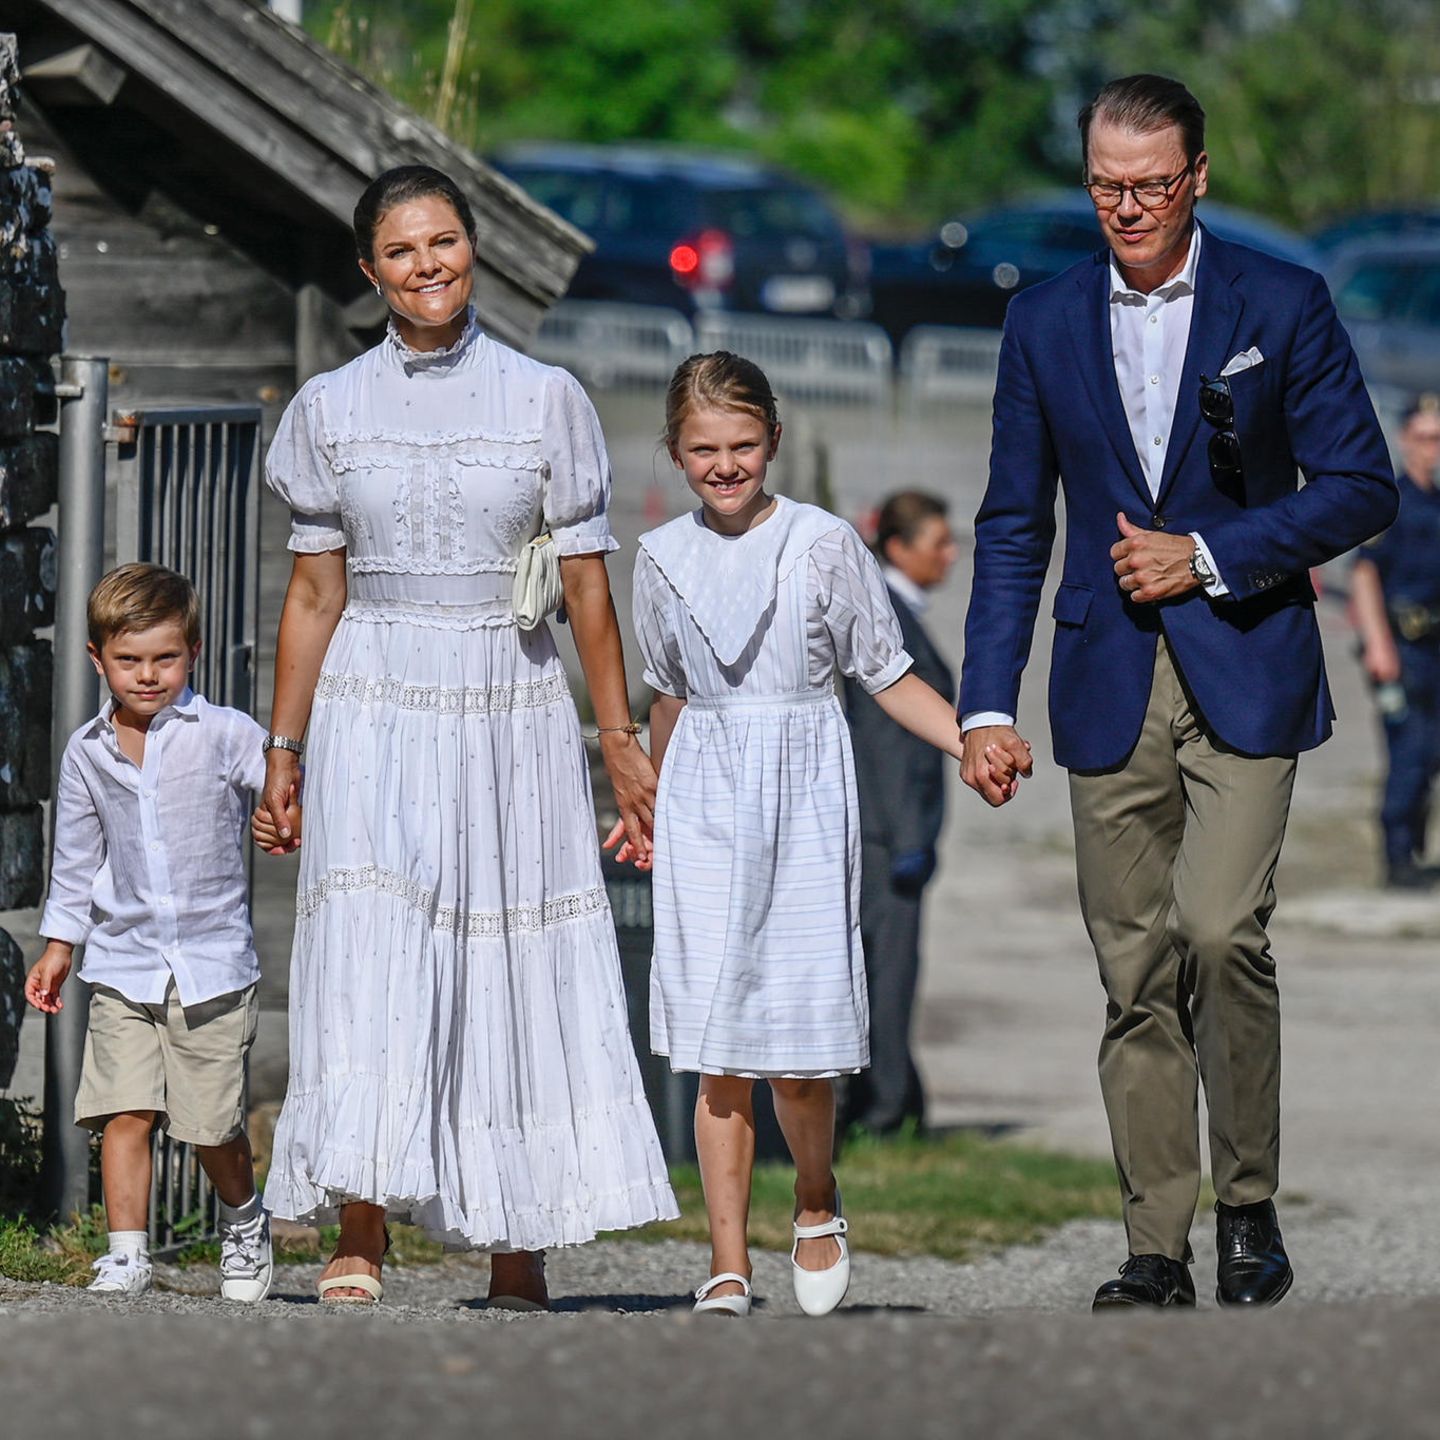 Ihren 44. Geburtstag verbringt Prinzessin Victoria mit der königlichen Familie traditionell in Borgholm. Dafür wählt die Schwedin ein Maxi-Kleid mit kurzen Puffärmeln, auch ihre Kinder Estelle und Oscar tragen entzückende weiße Outfits. Nur Prinz Daniel setzt auf den klassischen Look in blauem Blazer.